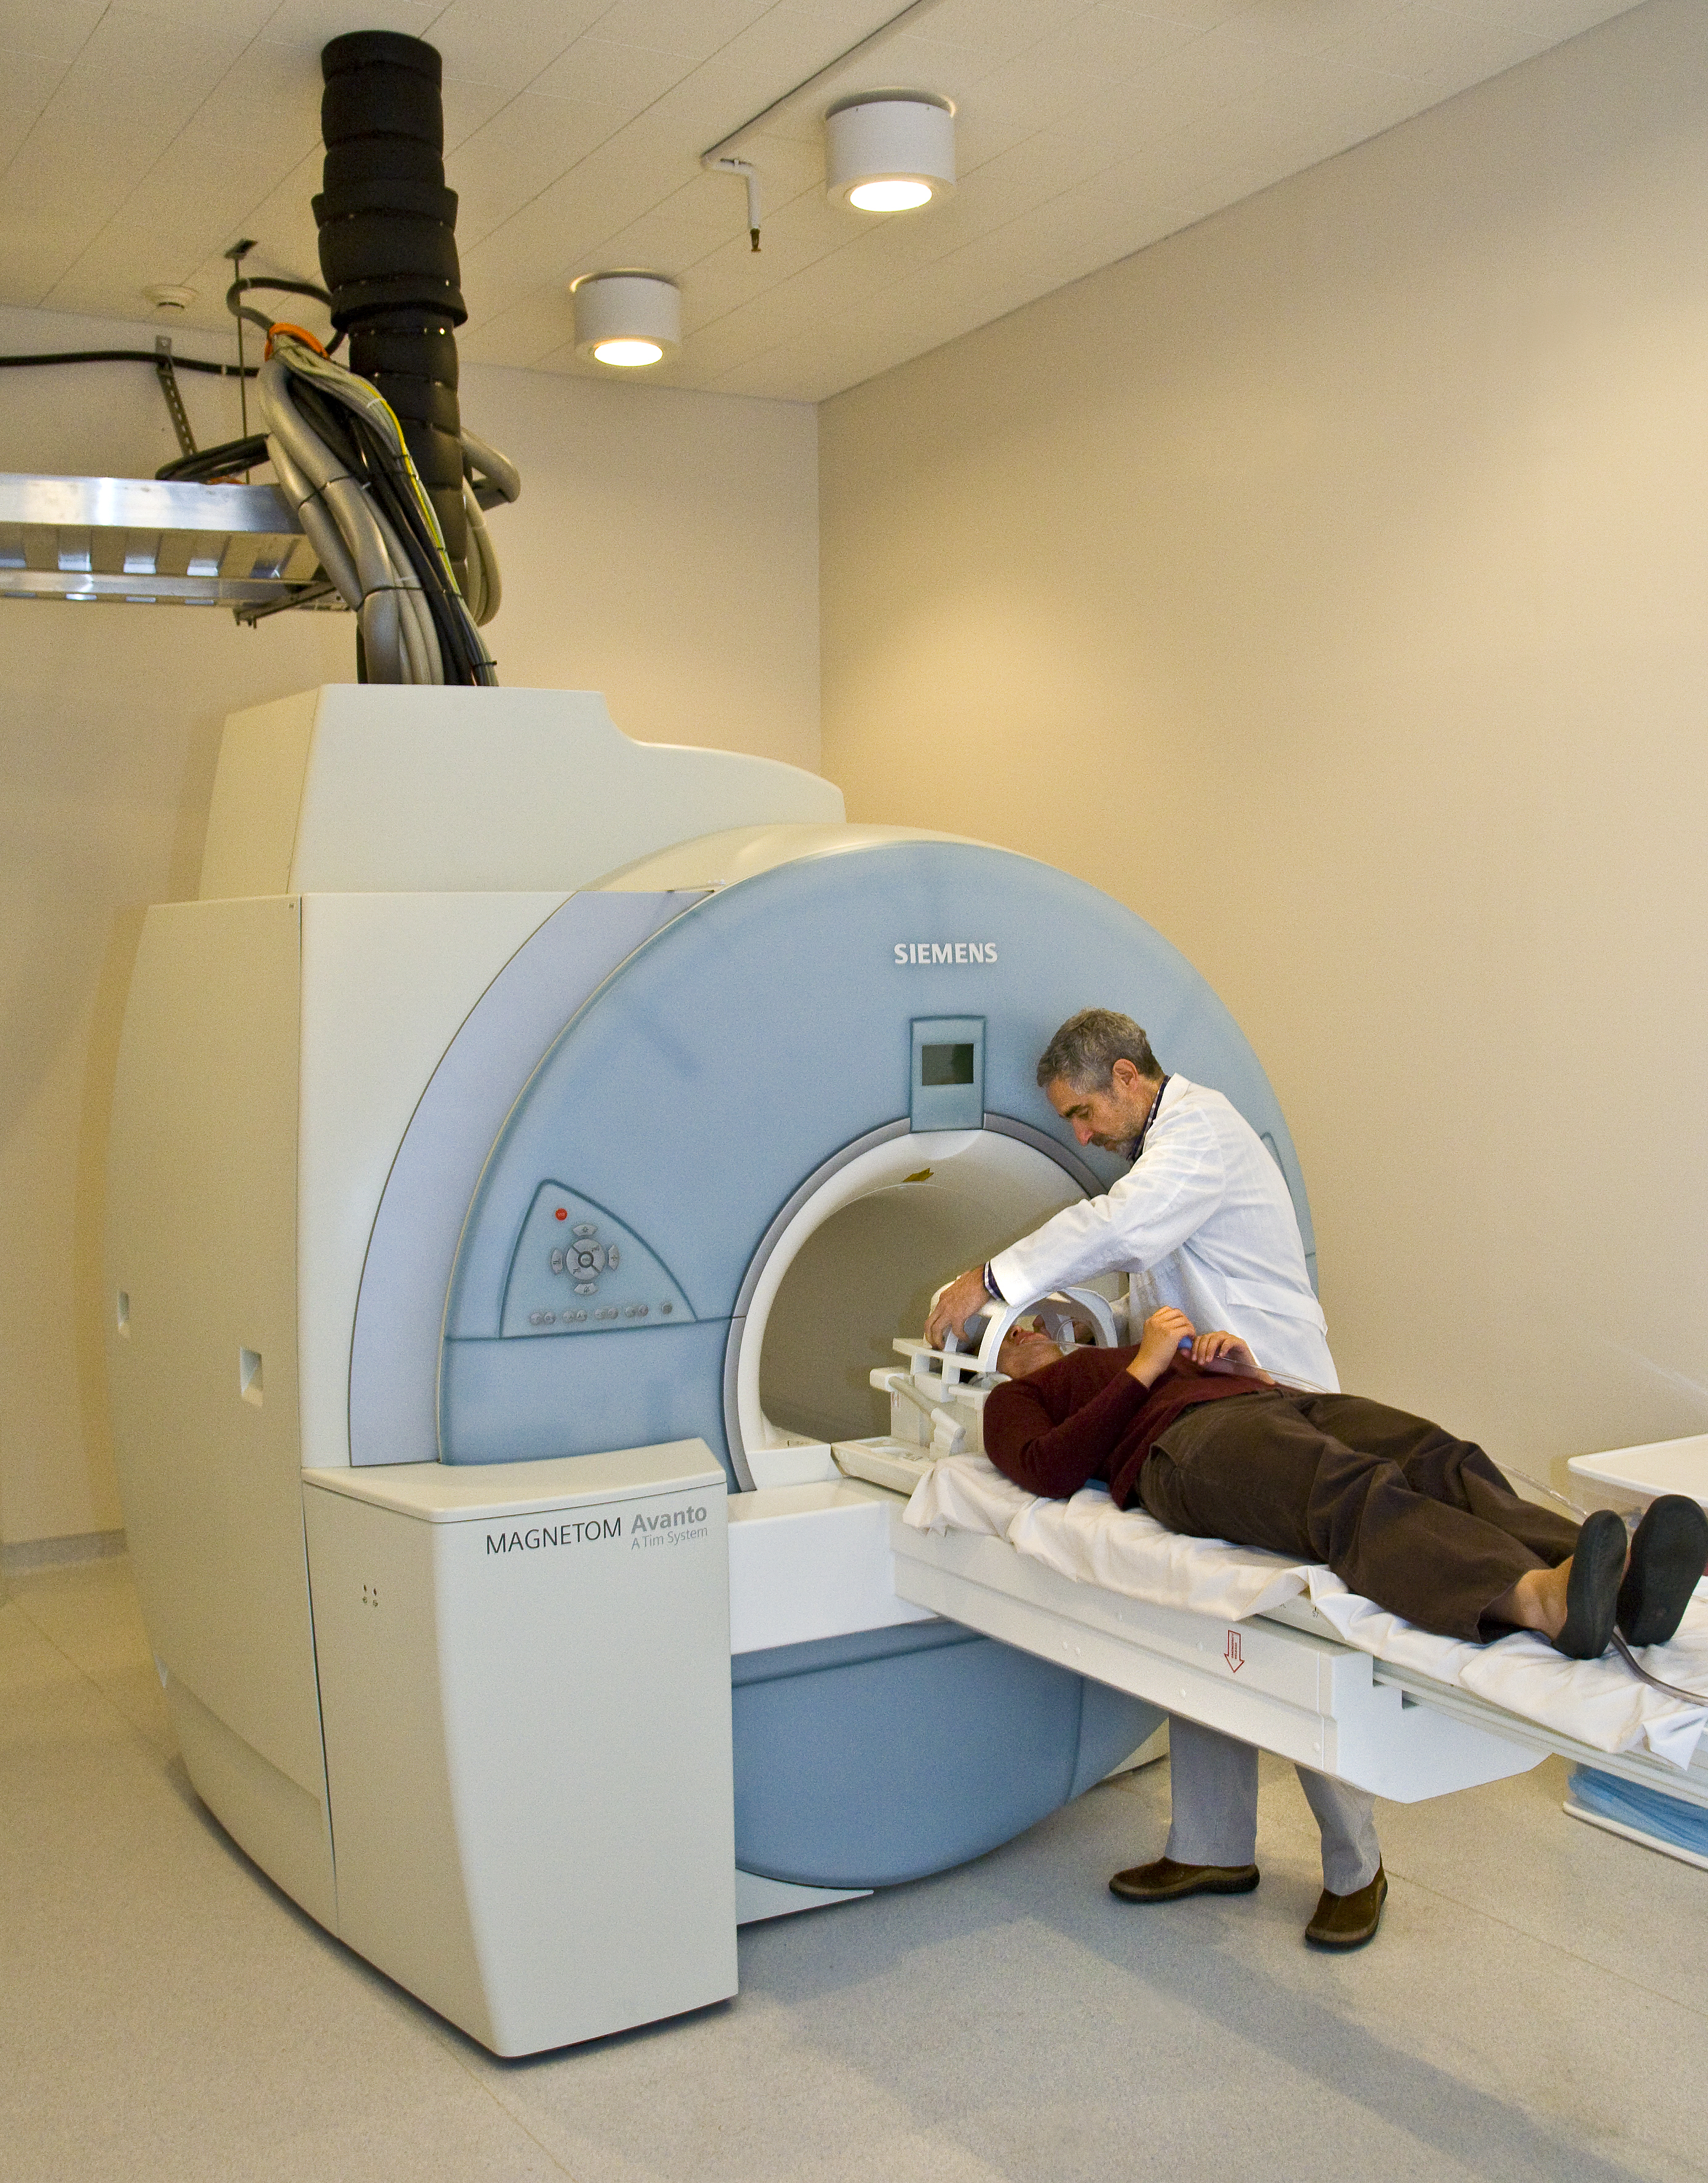 Un médico metiendo a un paciente en una máquina de IRMF. El paciente está acostado.